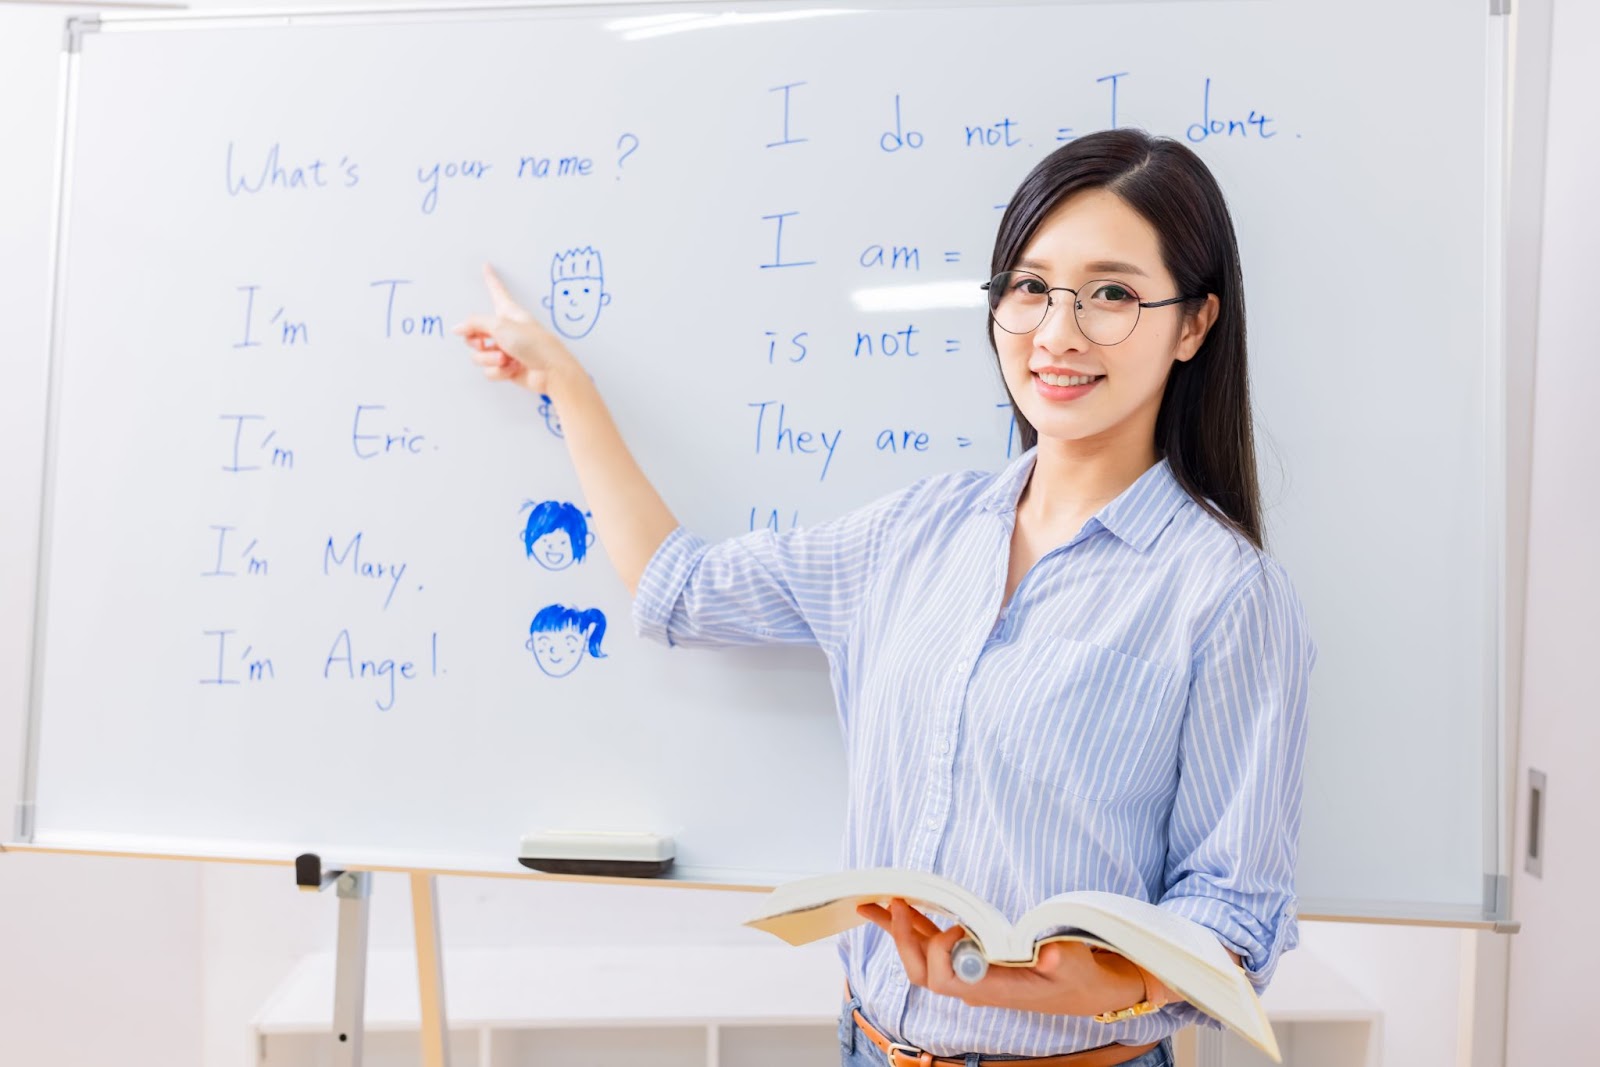 Ngoài việc nâng cao kinh nghiệm giảng dạy và cập nhật những xu hướng giáo dục, để trở thành một giáo viên tiếng Anh chuyên nghiệp đòi hỏi nhiều kỹ năng cùng kiến thức chuyên môn khác. (Nguồn ảnh: Freepik)